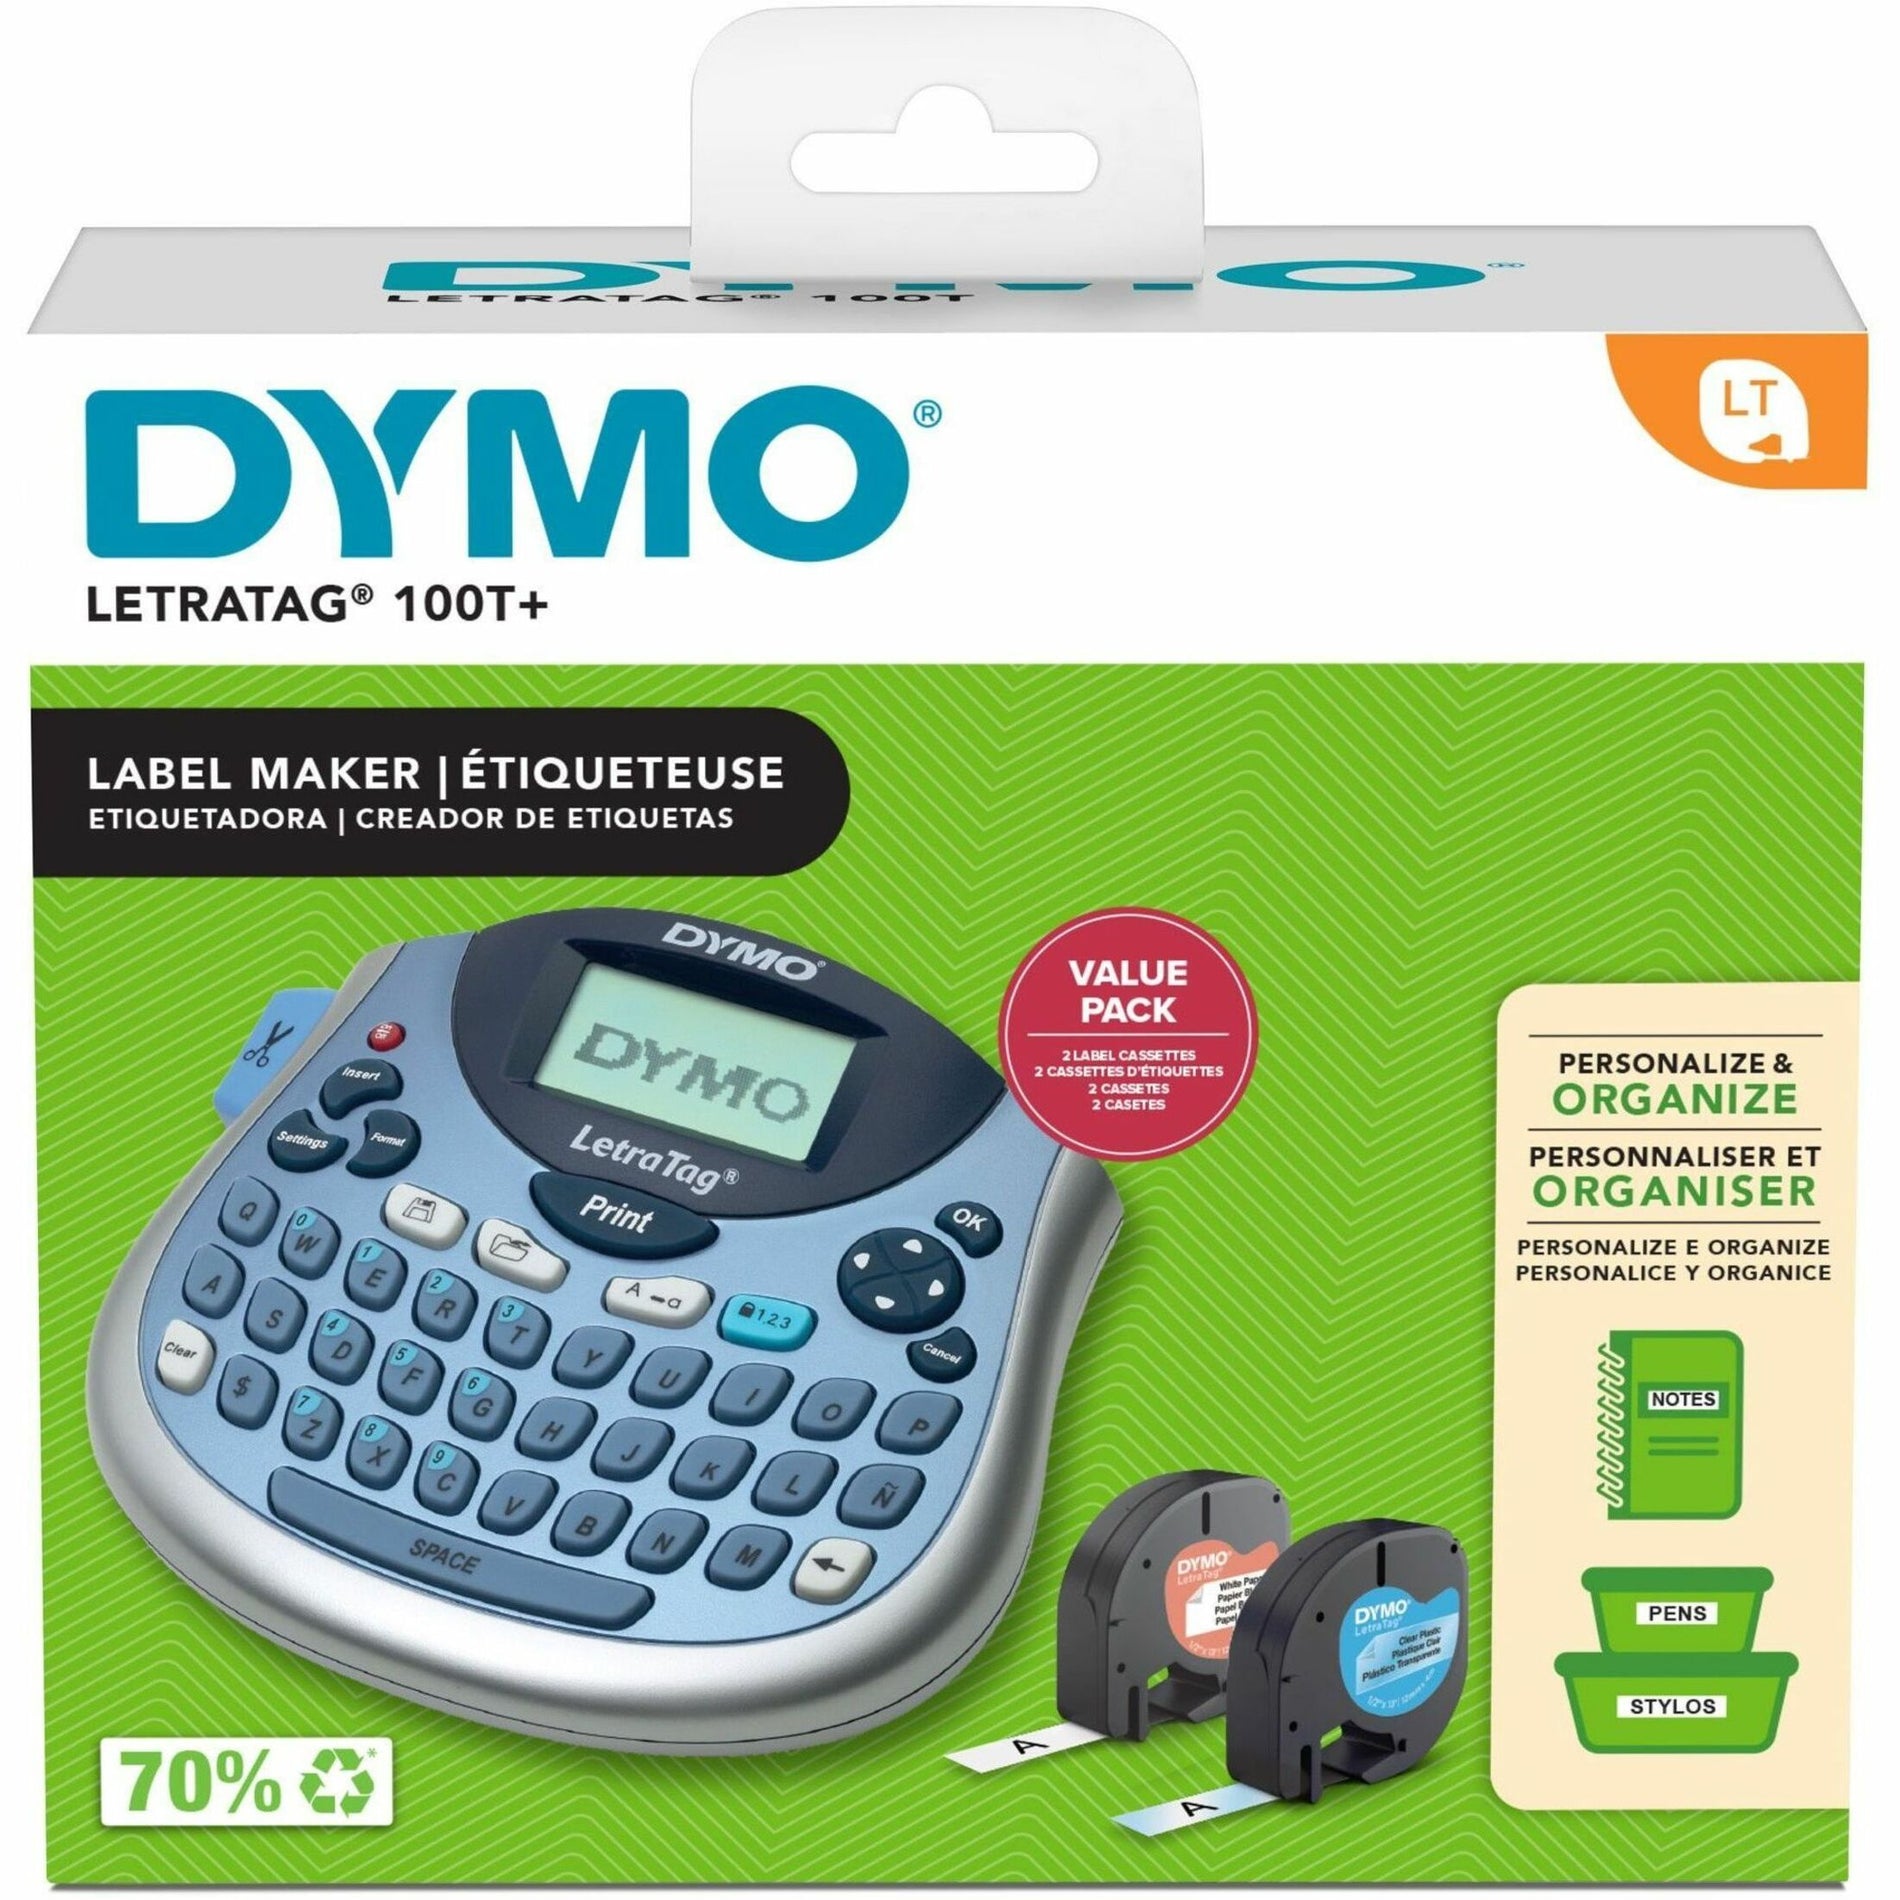 Dymo 2174540 LetraTag 100T Label Maker, Handheld Electronic Label Maker